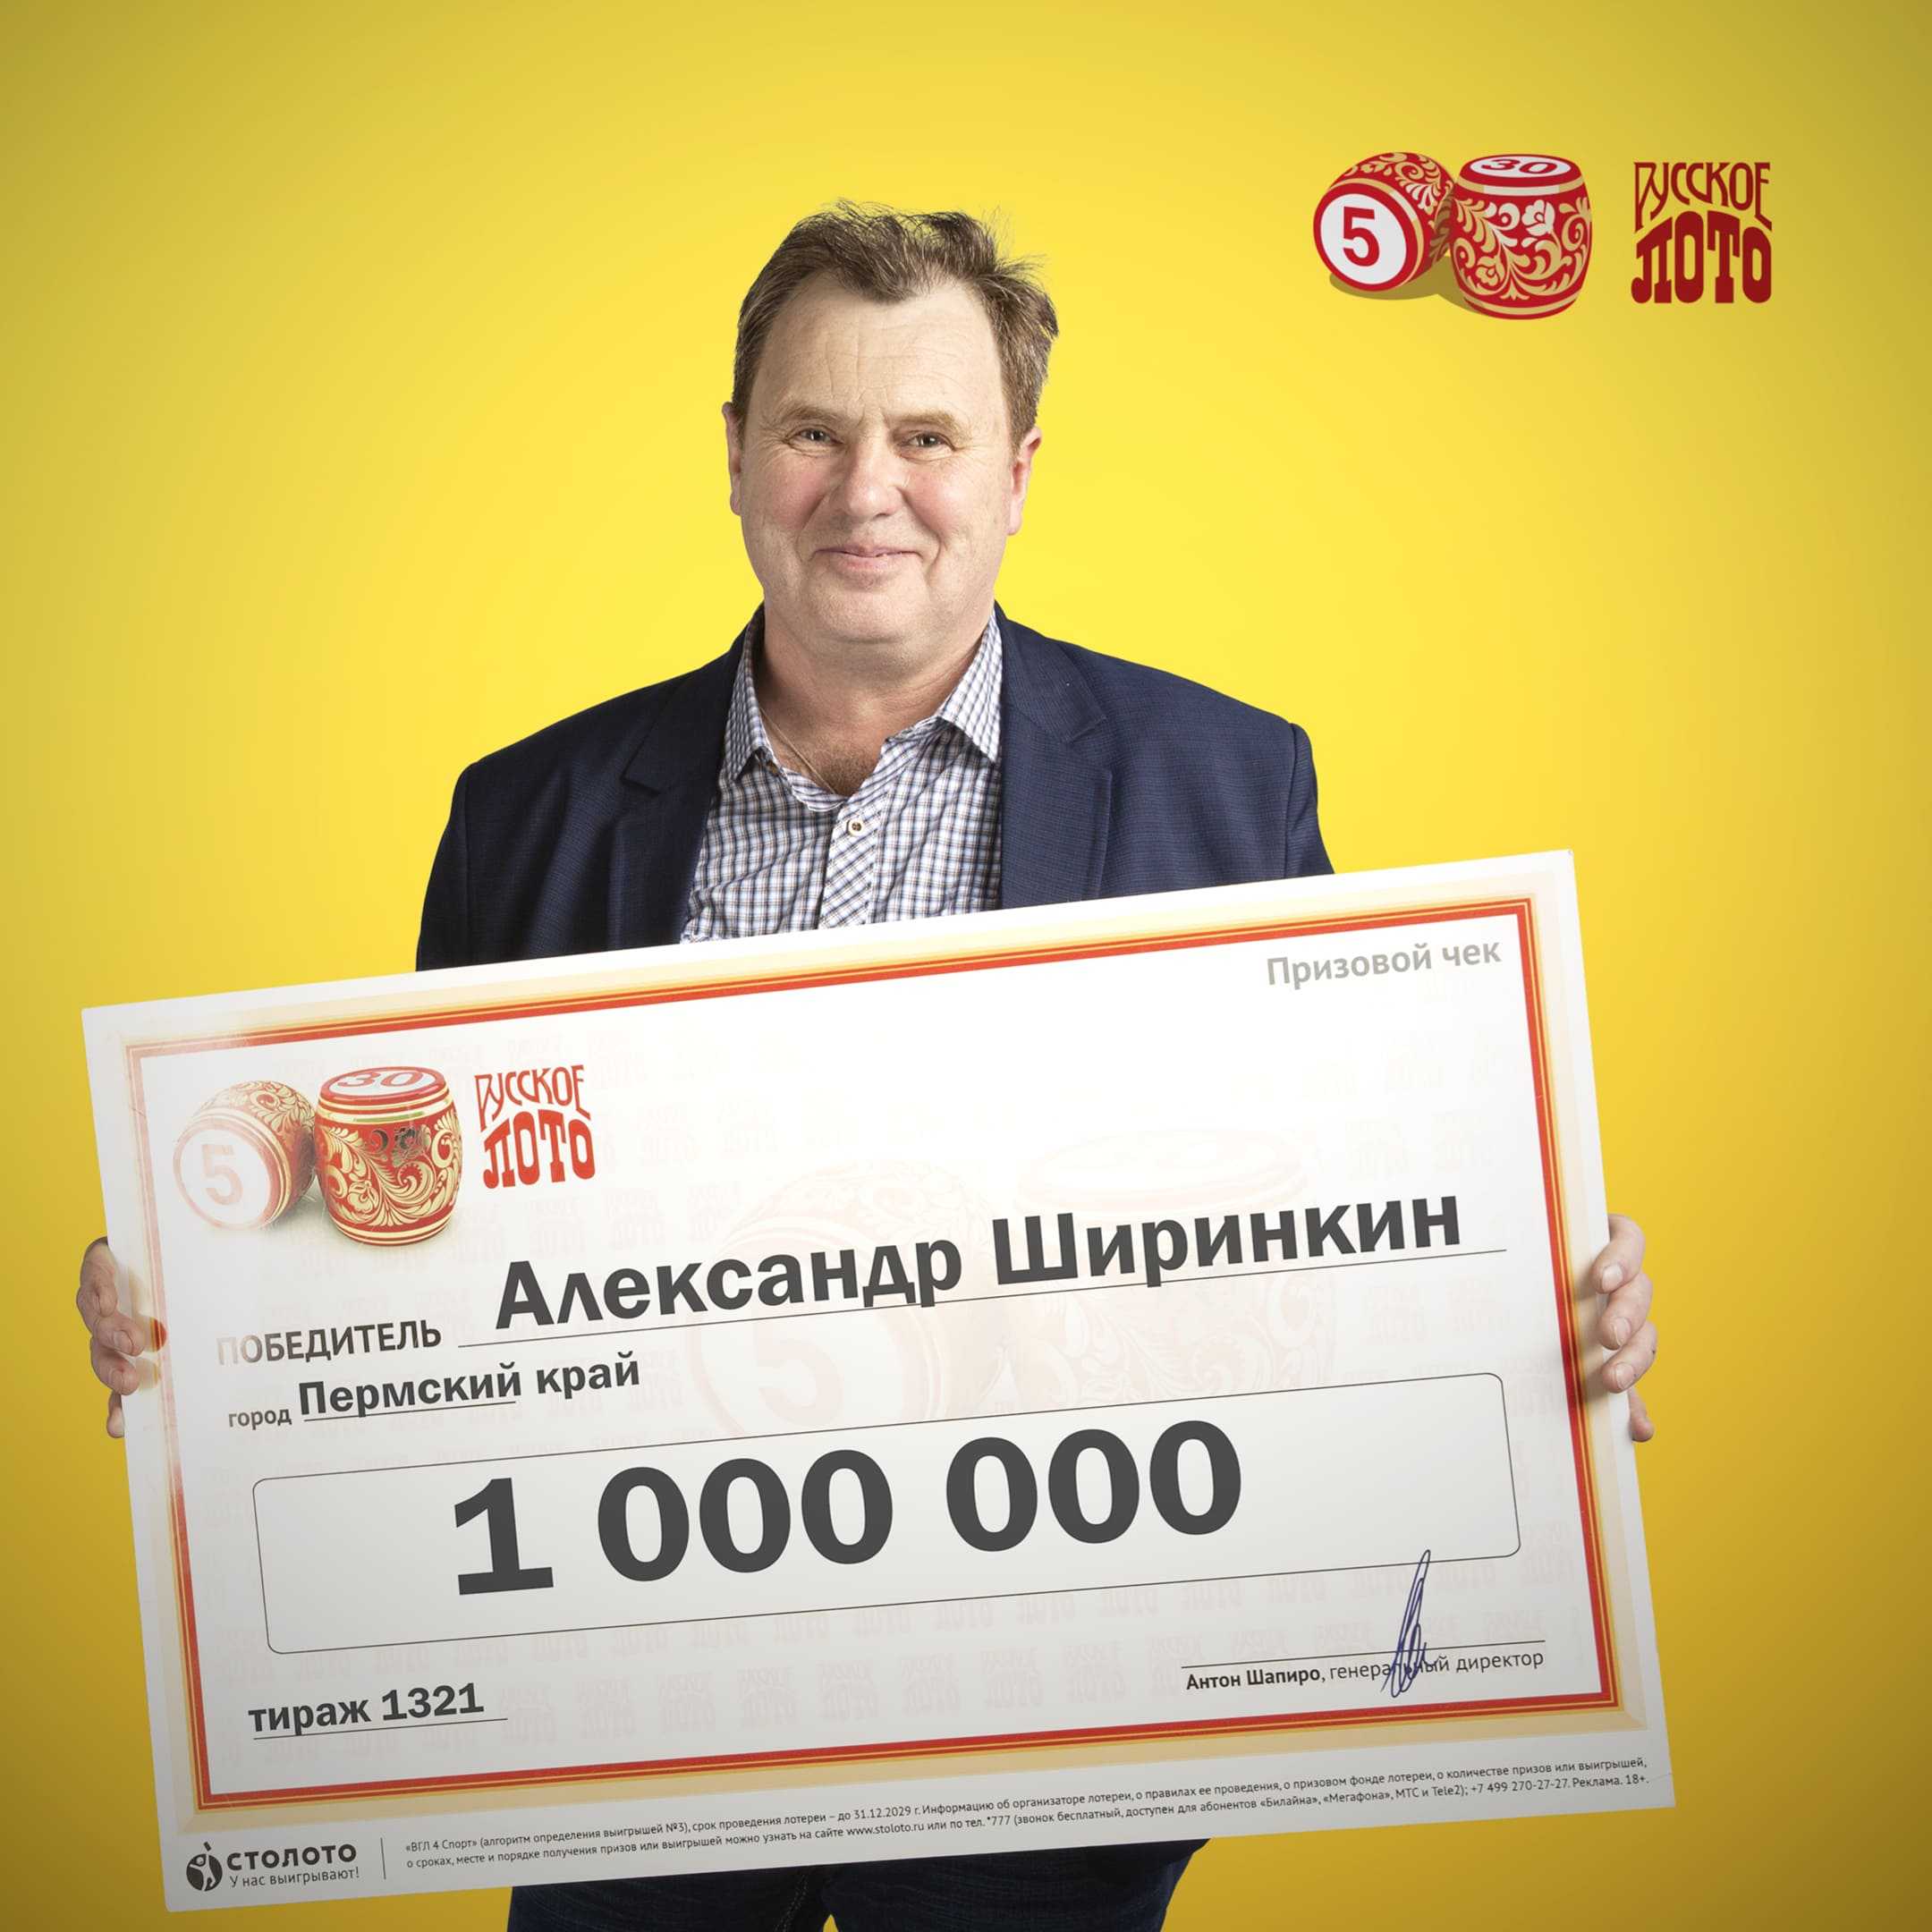 Как выиграть в лотерею крупную сумму русское. Победитель лотереи. Выигрыш в лотерею. Победители лотереи Столото. Выигрыш в лотерею джекпот.